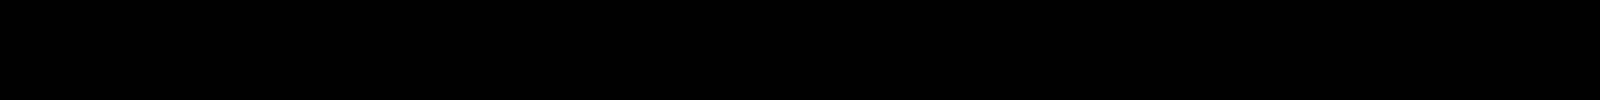 یک تلویزیون QNED در مقابل دیوار قرمز تصویری از مسابقه بسکتبال با دو بازیکن در حال انجام بازی را نشان می‌دهد. درست در پایین، دو کادر تصویر مشاهده می‌شوند. تصویر سمت چپ حاوی عبارت «VRR خاموش» بوده و تصویر تار همان مسابقه را نشان می‌دهد و در تصویر سمت راست عبارت «VRR روشن» ذکر شده و همان تصویر بالا را نمایش می‌دهد.